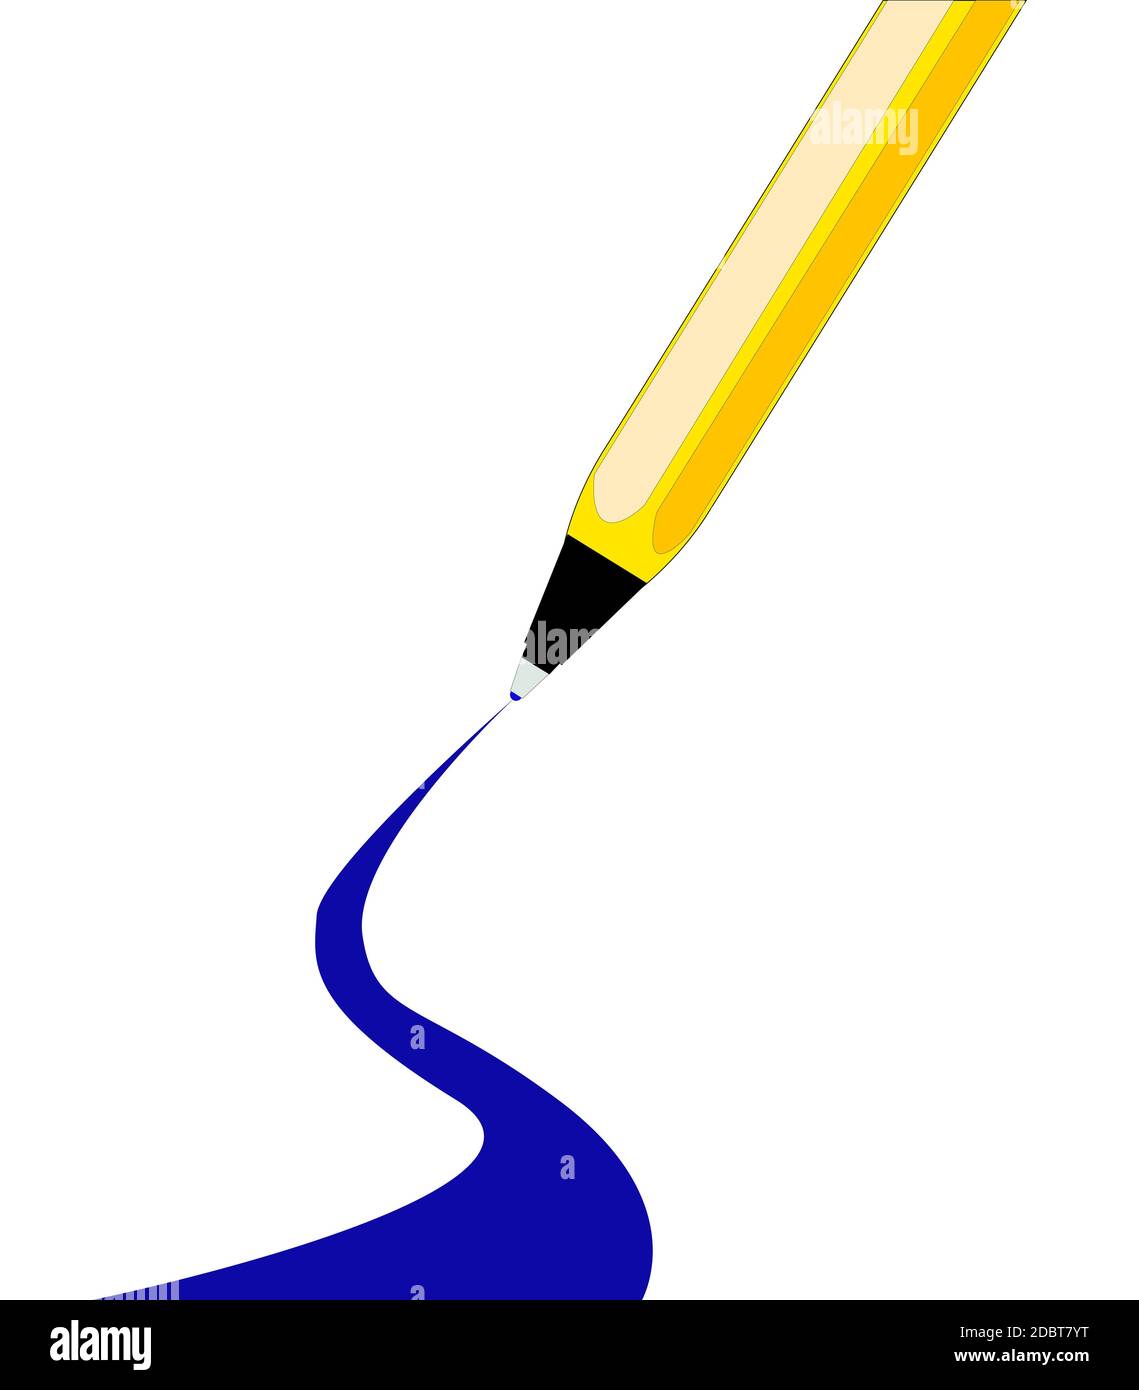 Une encre bleue stylo à bille avec un réduit pour plus larges vers le bas de la page Banque D'Images